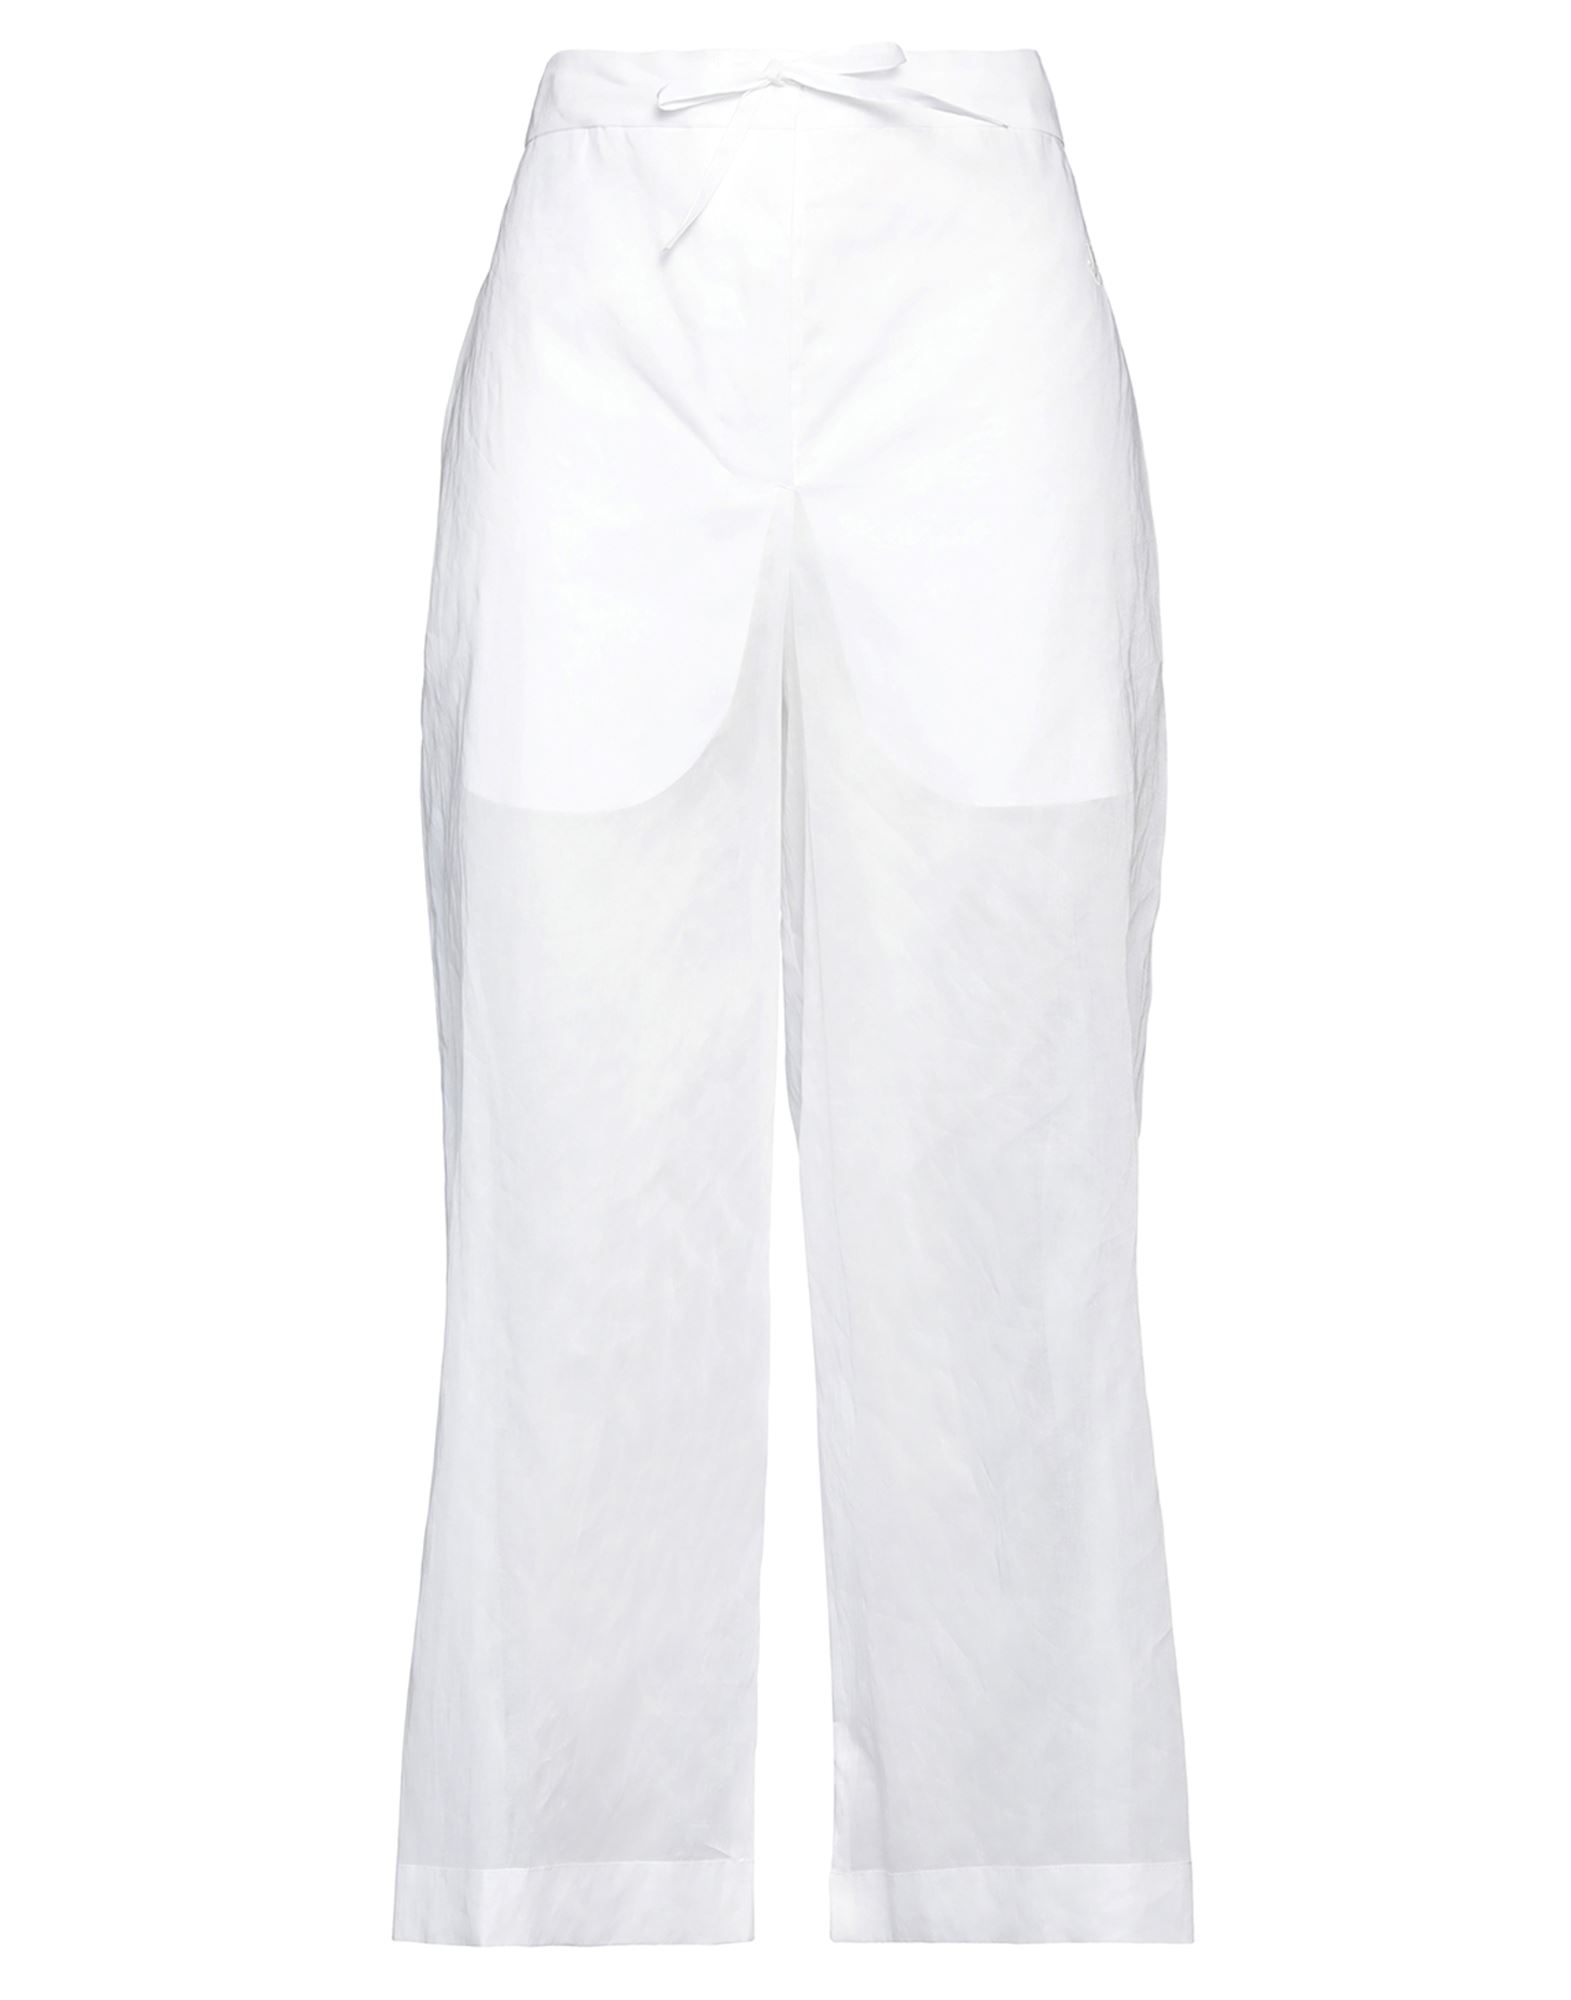 Jil Sander Woman Pants White Size 10 Cotton